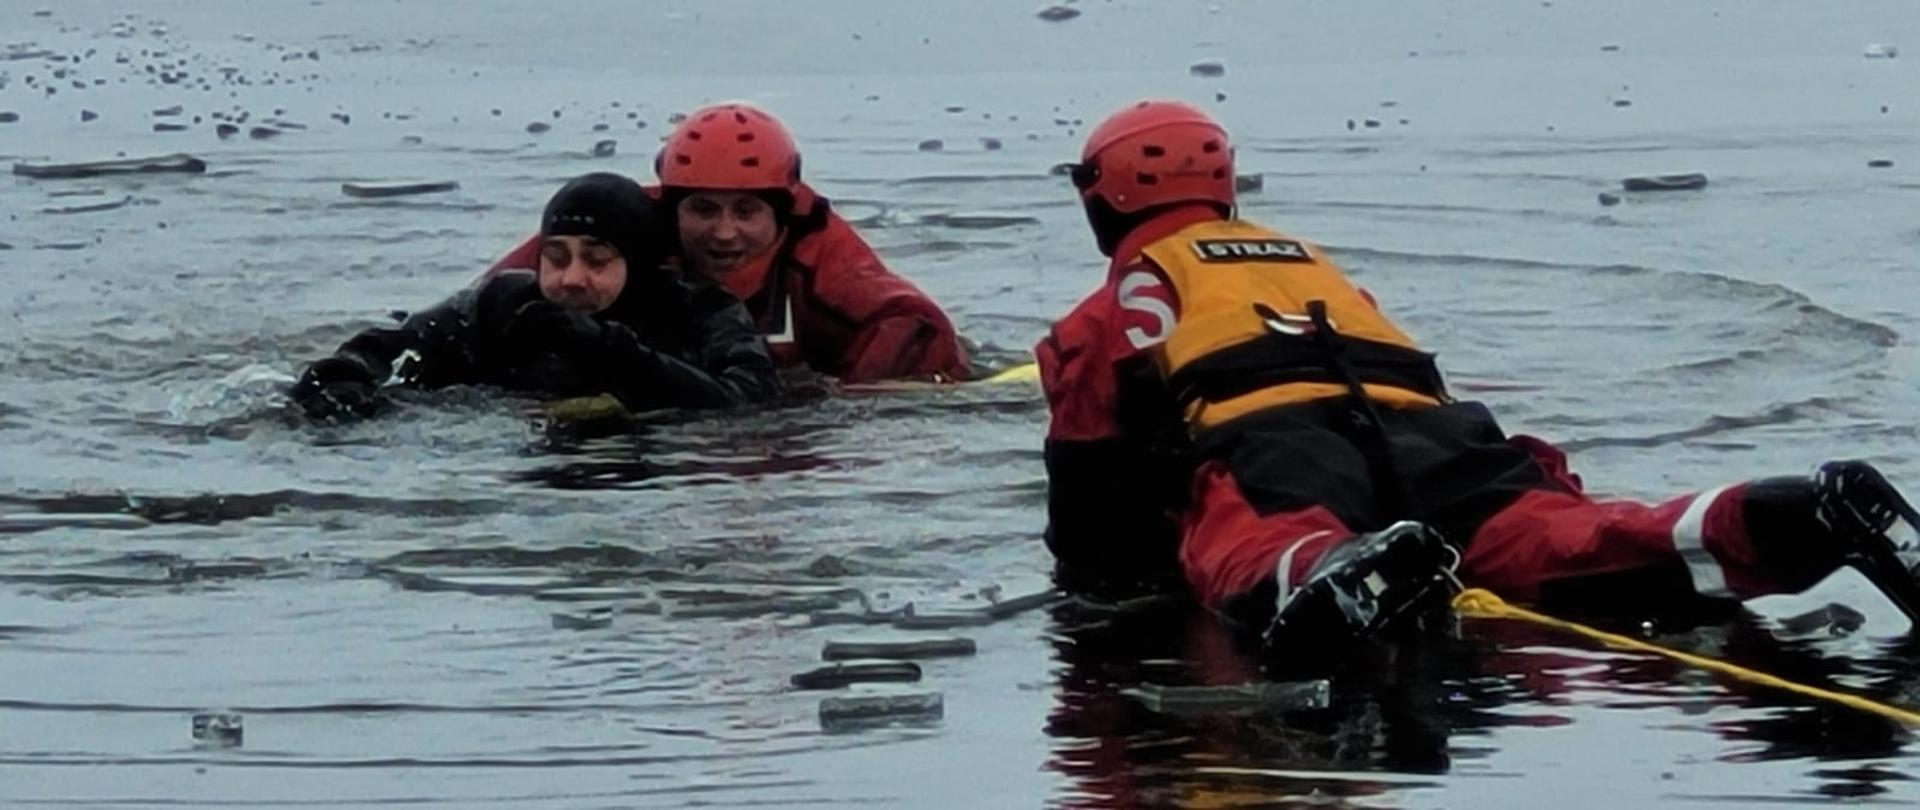 dwóch strażaków w czerwonych ubraniach nie zatapialnych którzy ratują osobę będąca w wodzie.